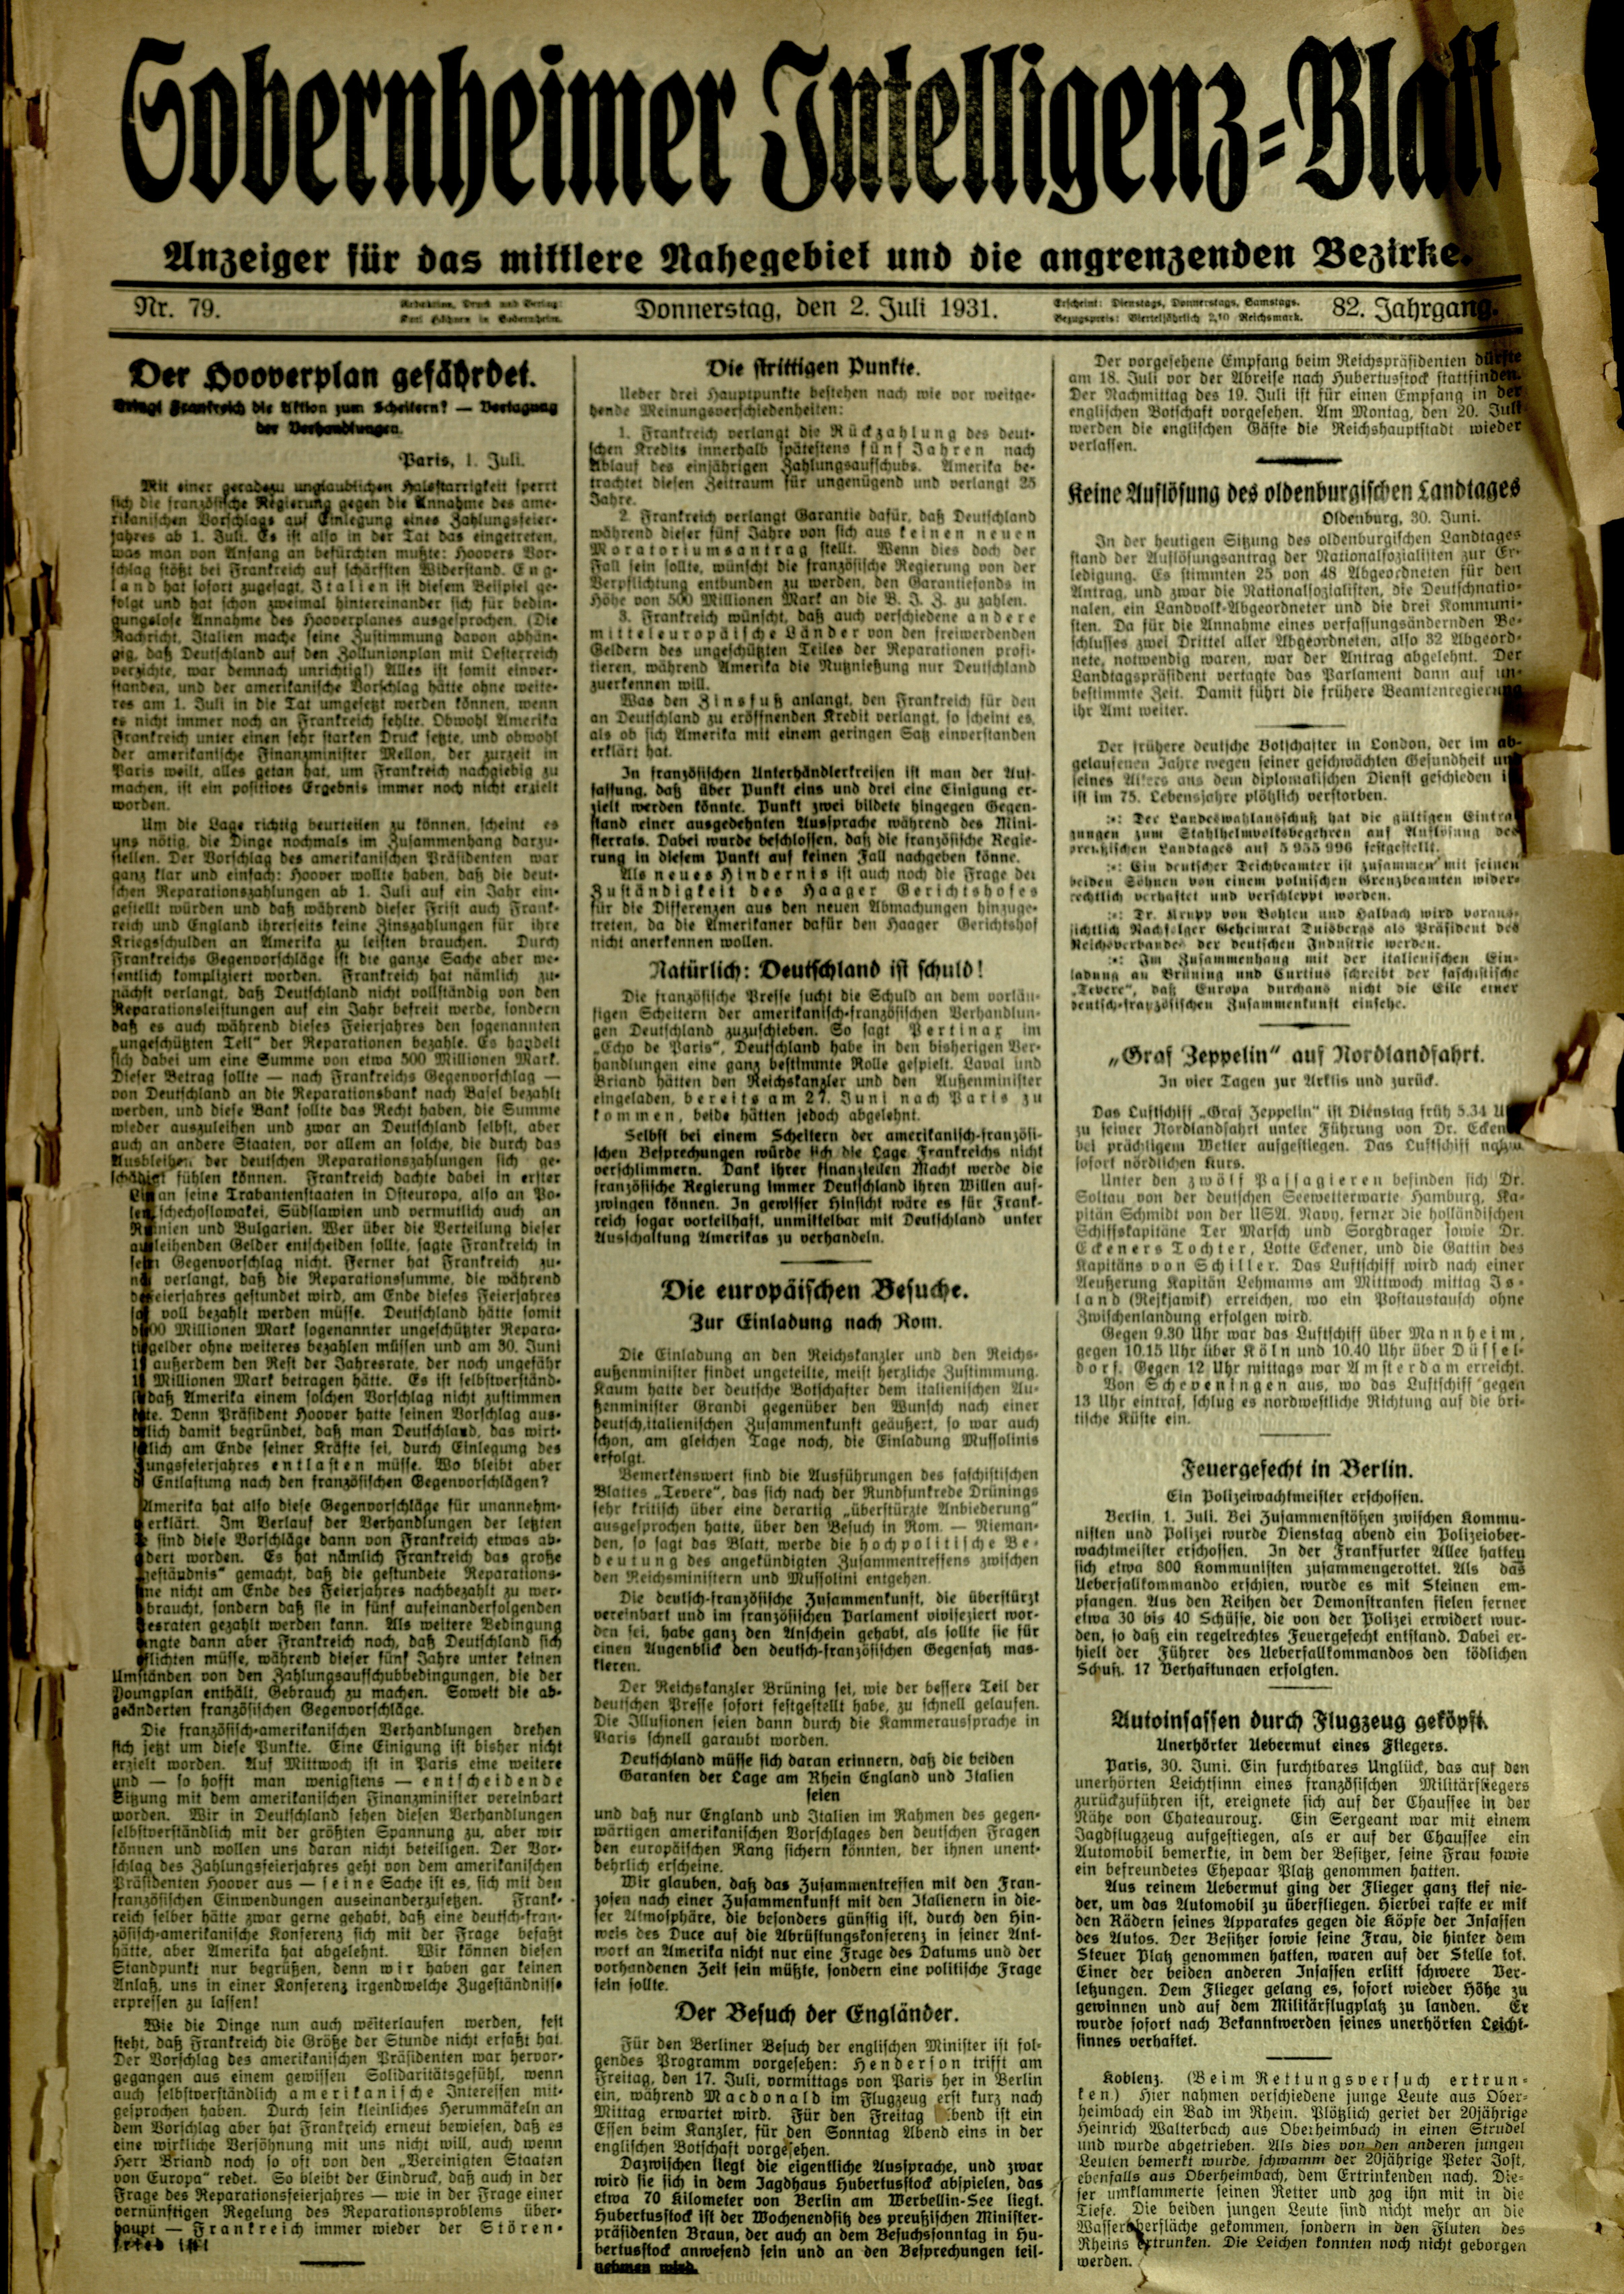 Zeitung: Sobernheimer Intelligenzblatt; Juli 1931, Jg. 79 Nr. 82 (Heimatmuseum Bad Sobernheim CC BY-NC-SA)